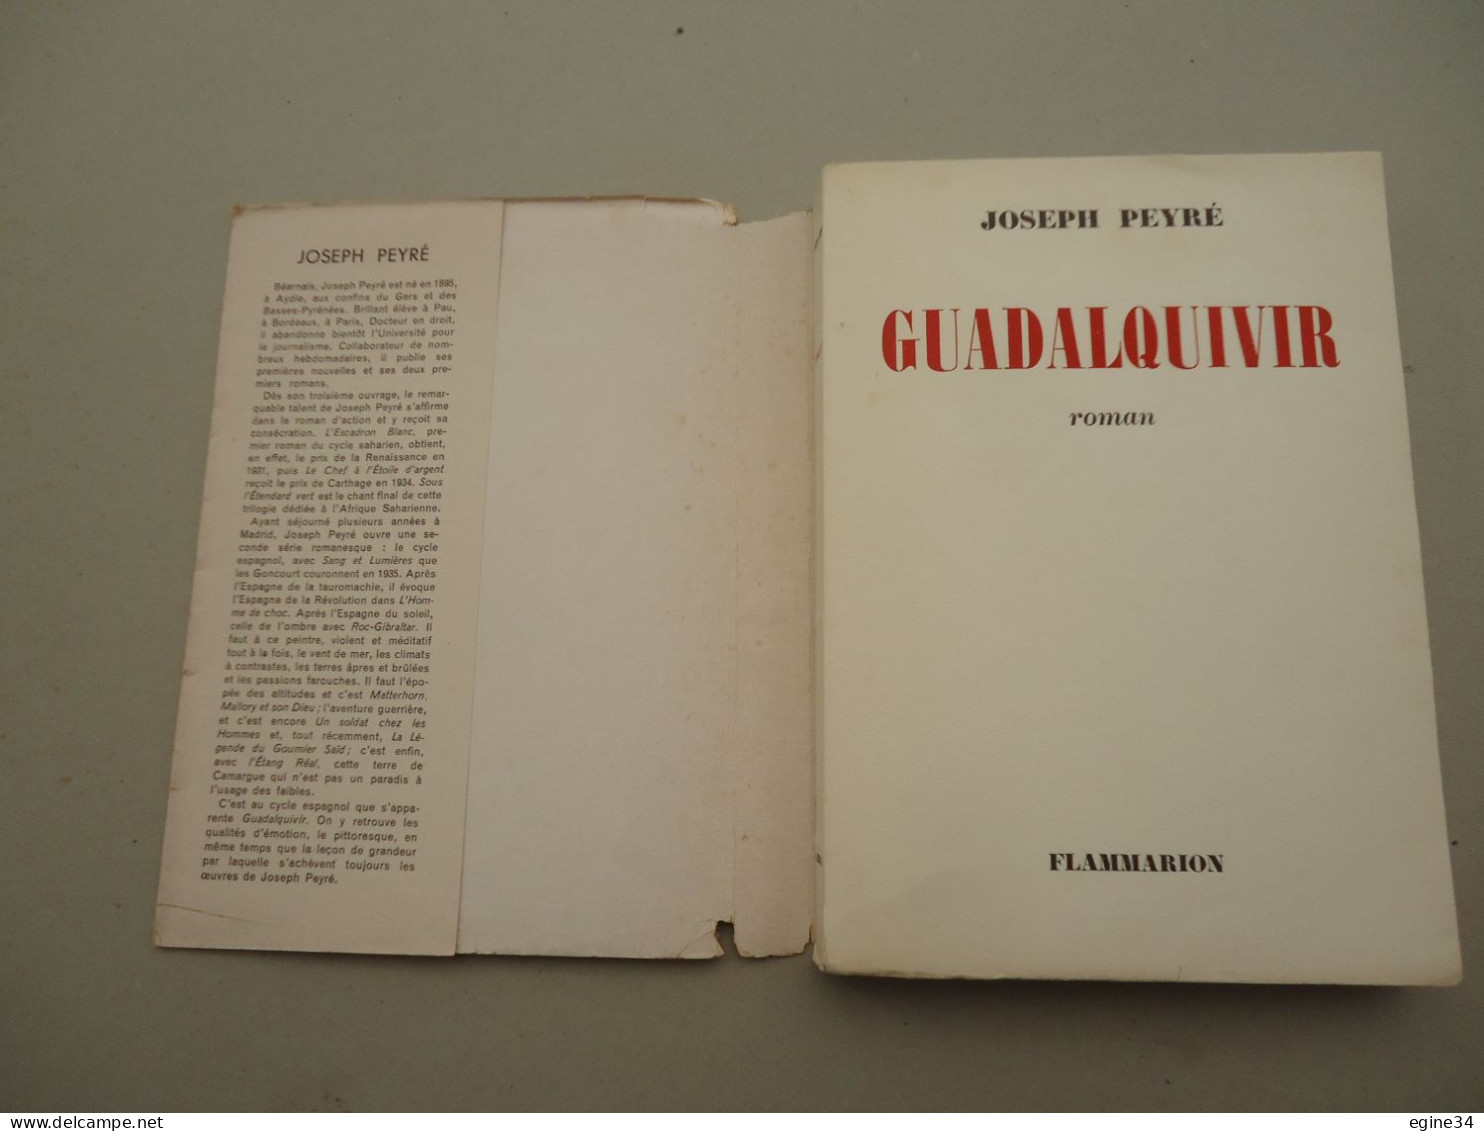 Editeur Flammarion - Joseph Peyré - Guadaquivir - 1952 - Papier Chiffon N. VIII - Livres Dédicacés